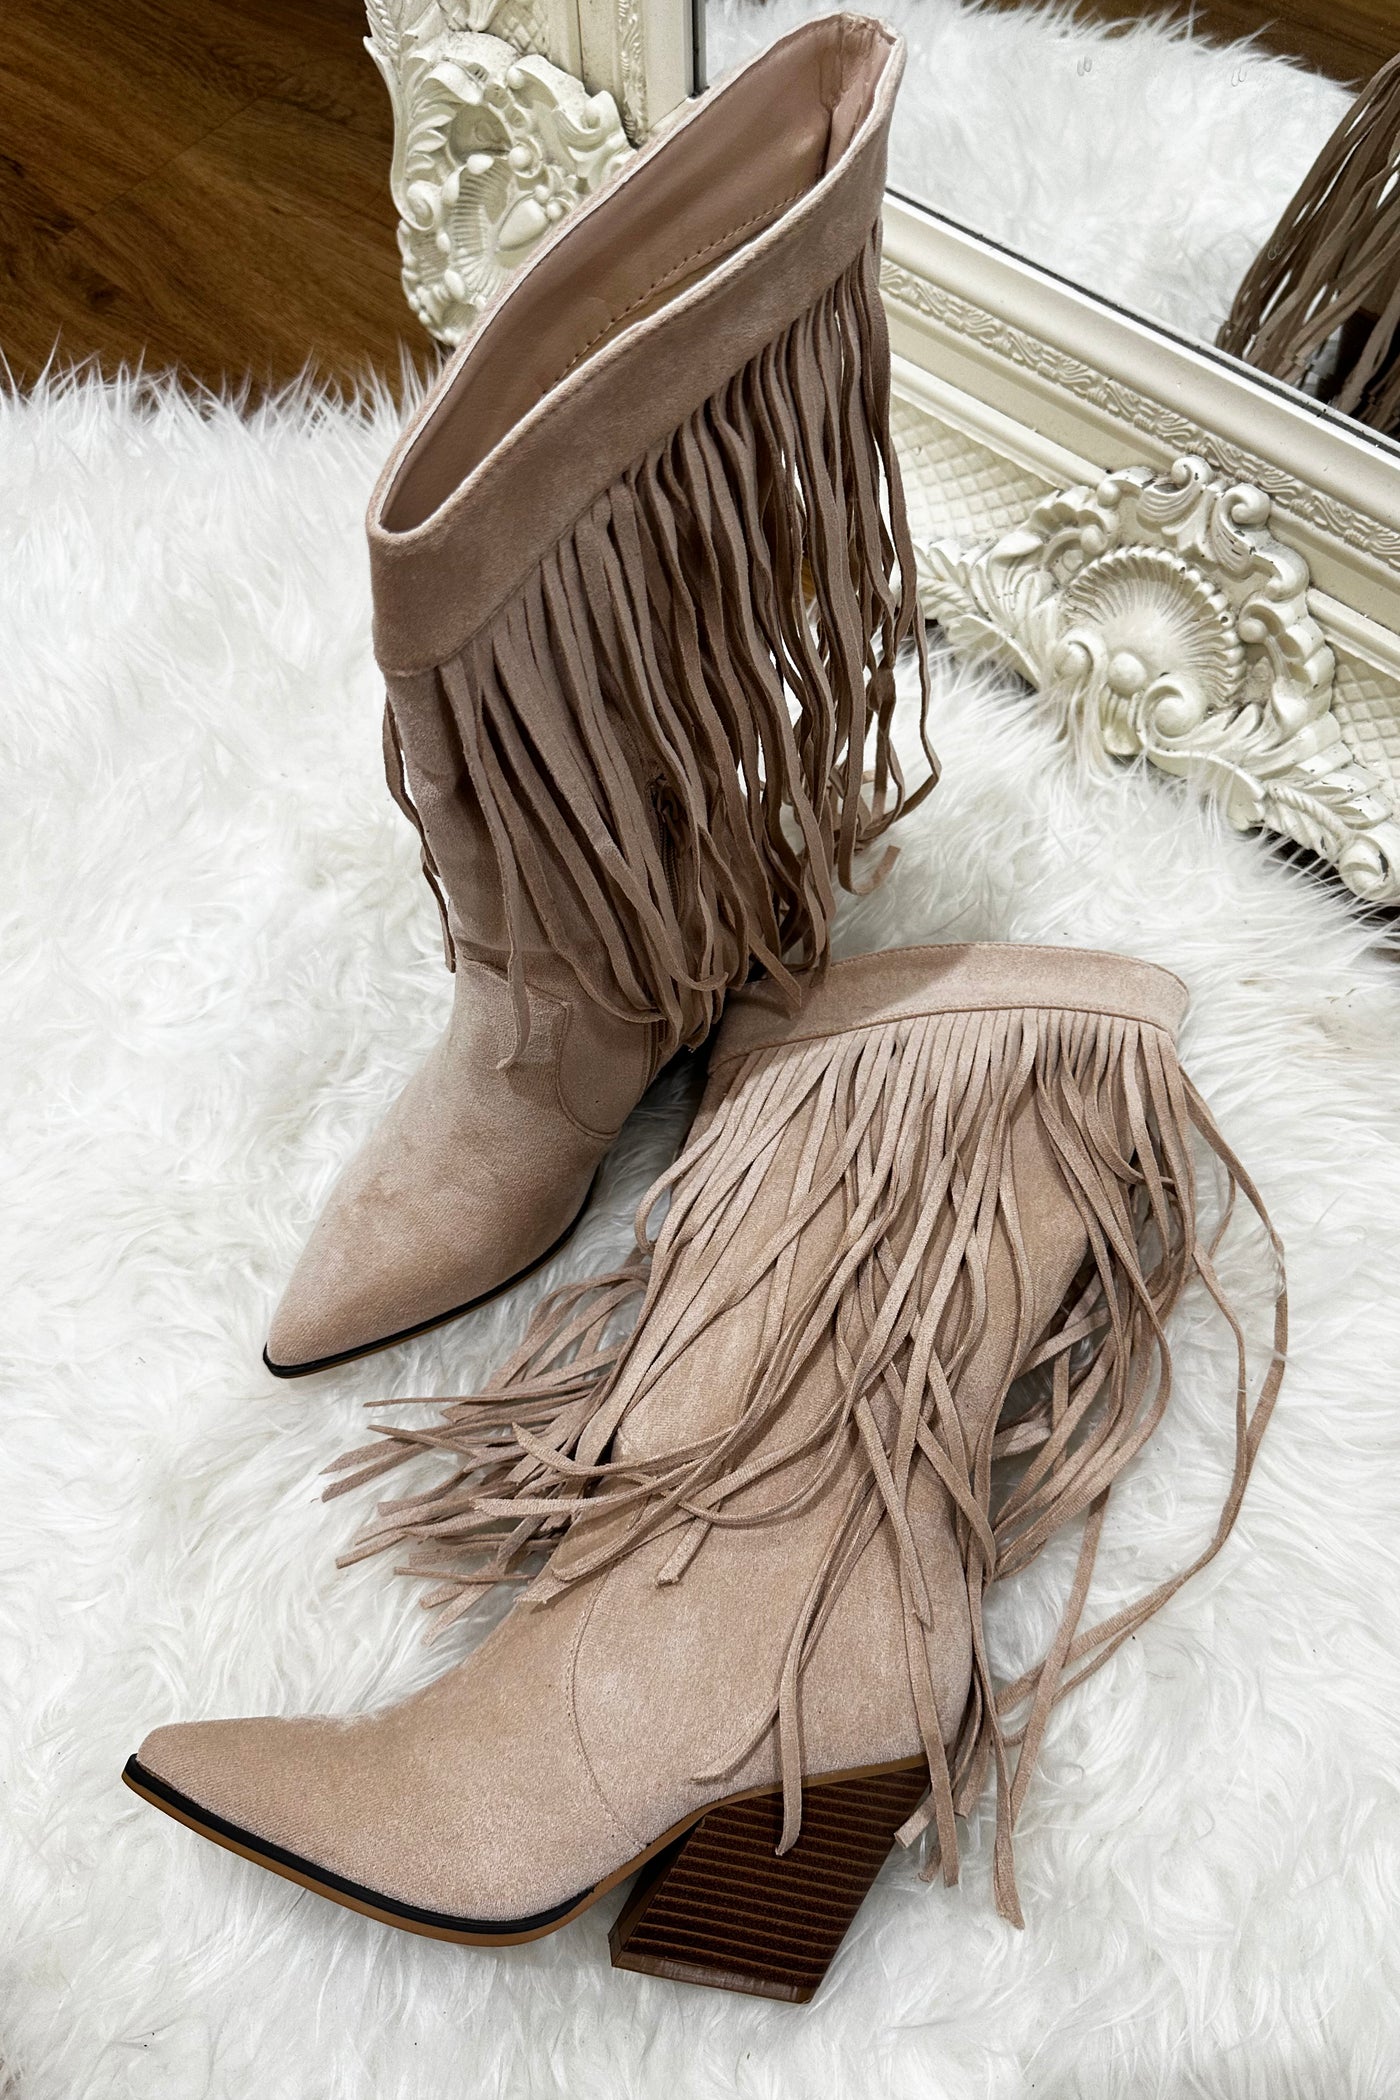 Tassel Cowboy Boots - Beige